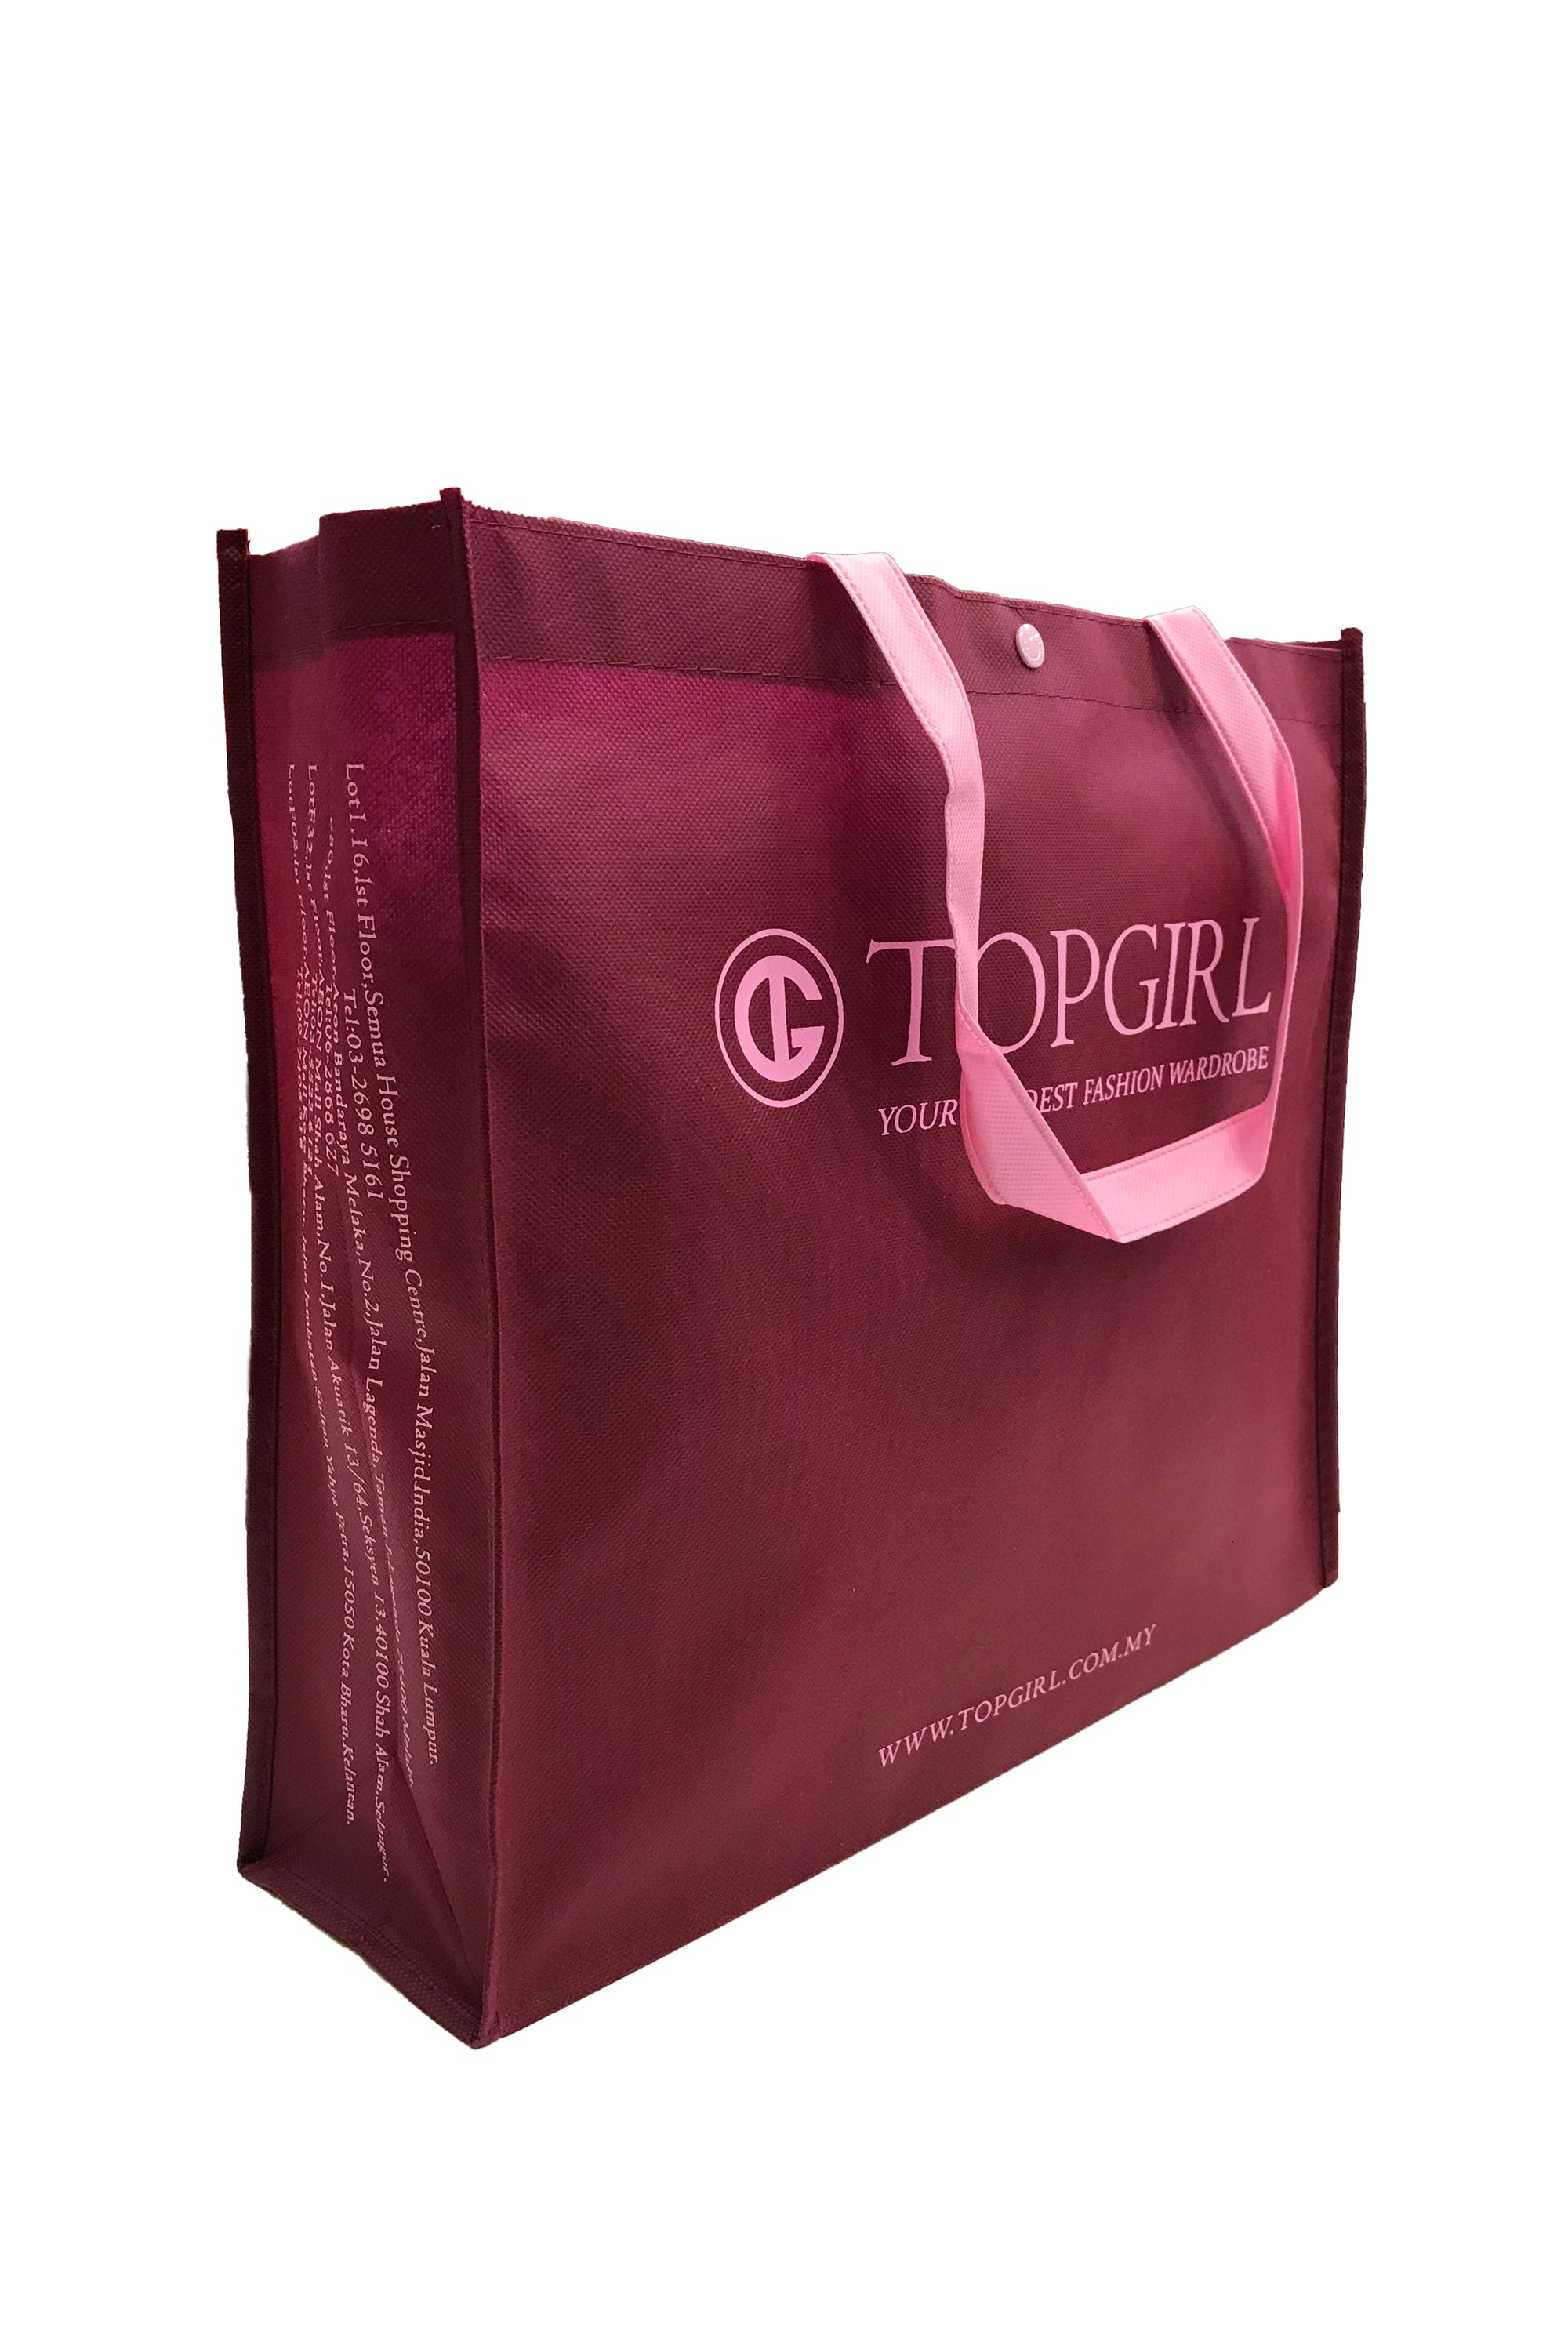 TOPGIRL Recycle Bag (Large)